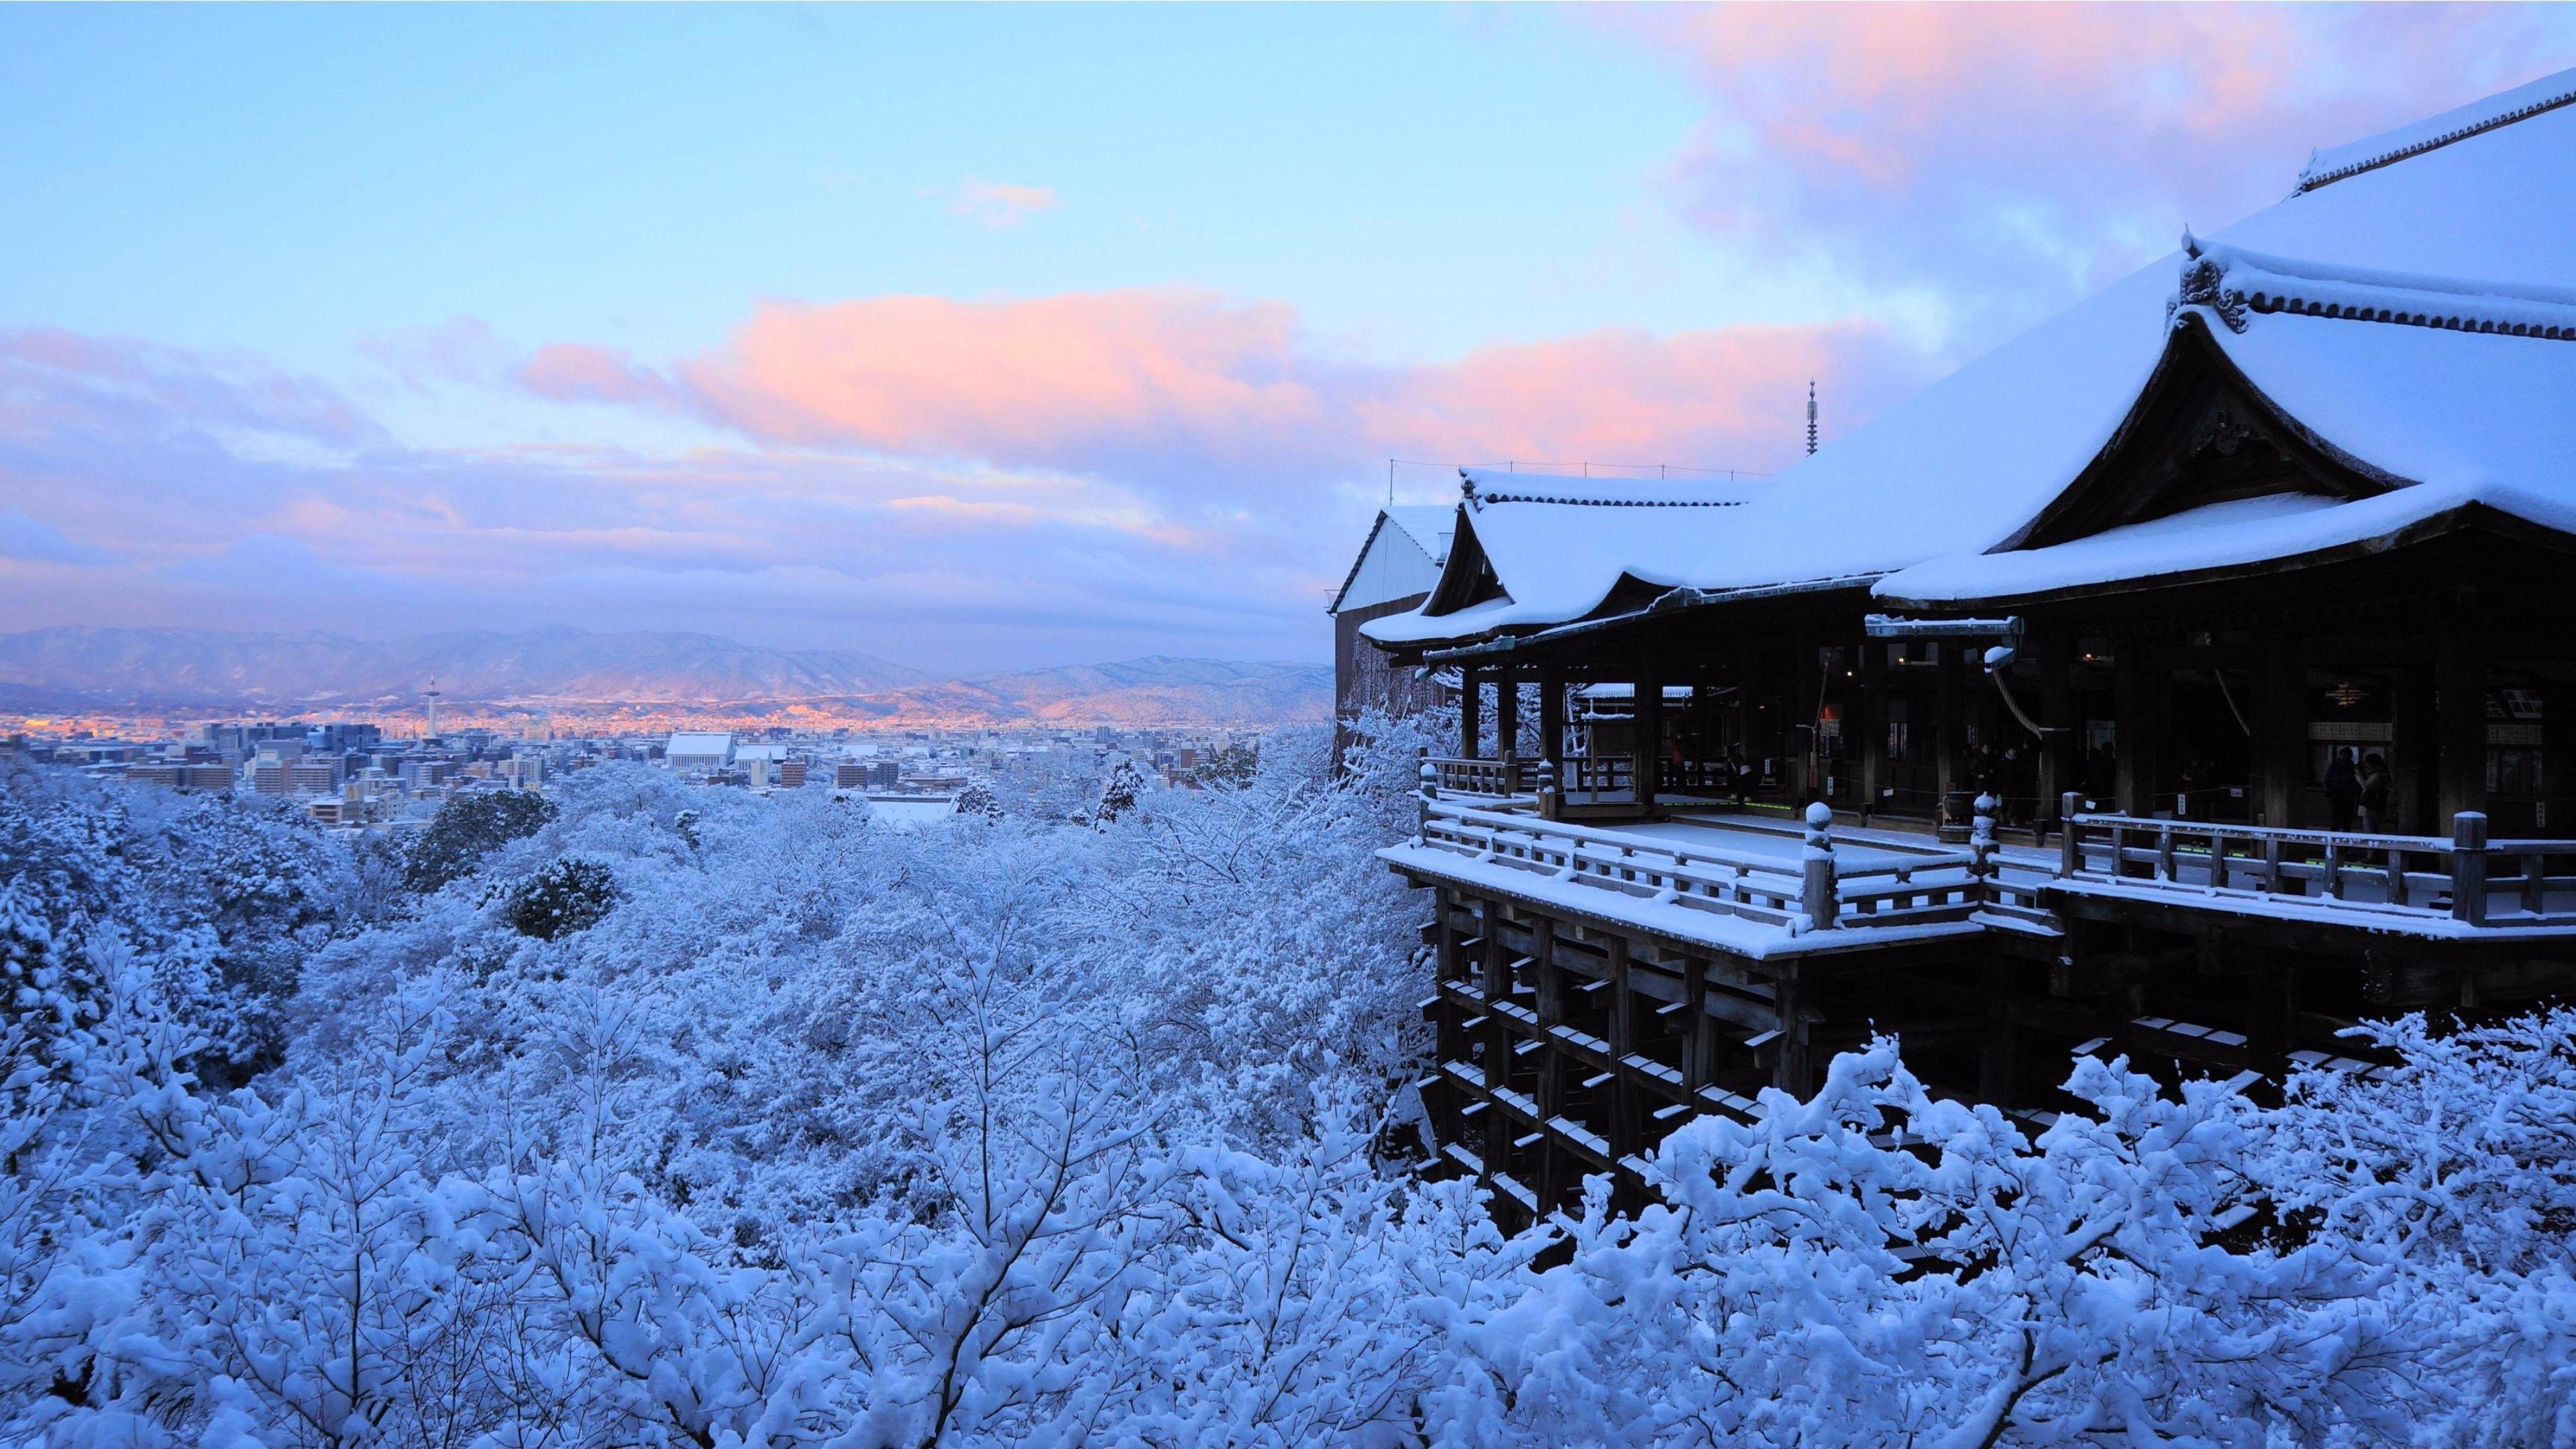 3840x2160 Hình nền 4K tuyệt vời mùa đông 2016 Kyoto, Nhật Bản.  4K miễn phí